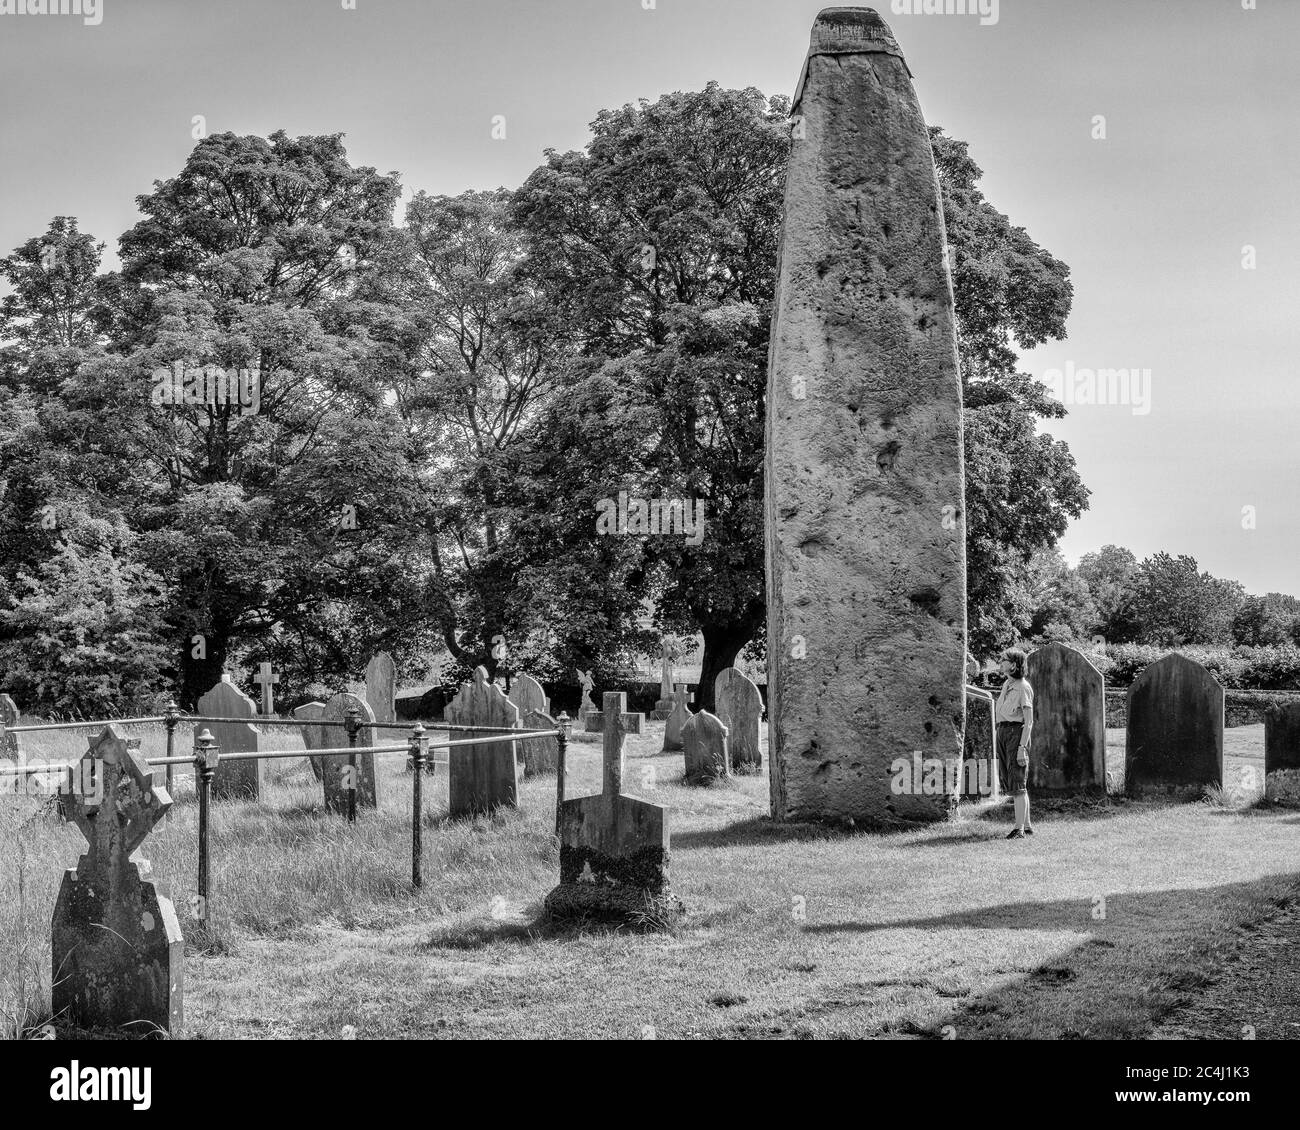 Admirando la piedra monolítica más alta (25 pies) en el Reino Unido, la Iglesia de todos los Santos, Rudston, East Yorkshire Foto de stock